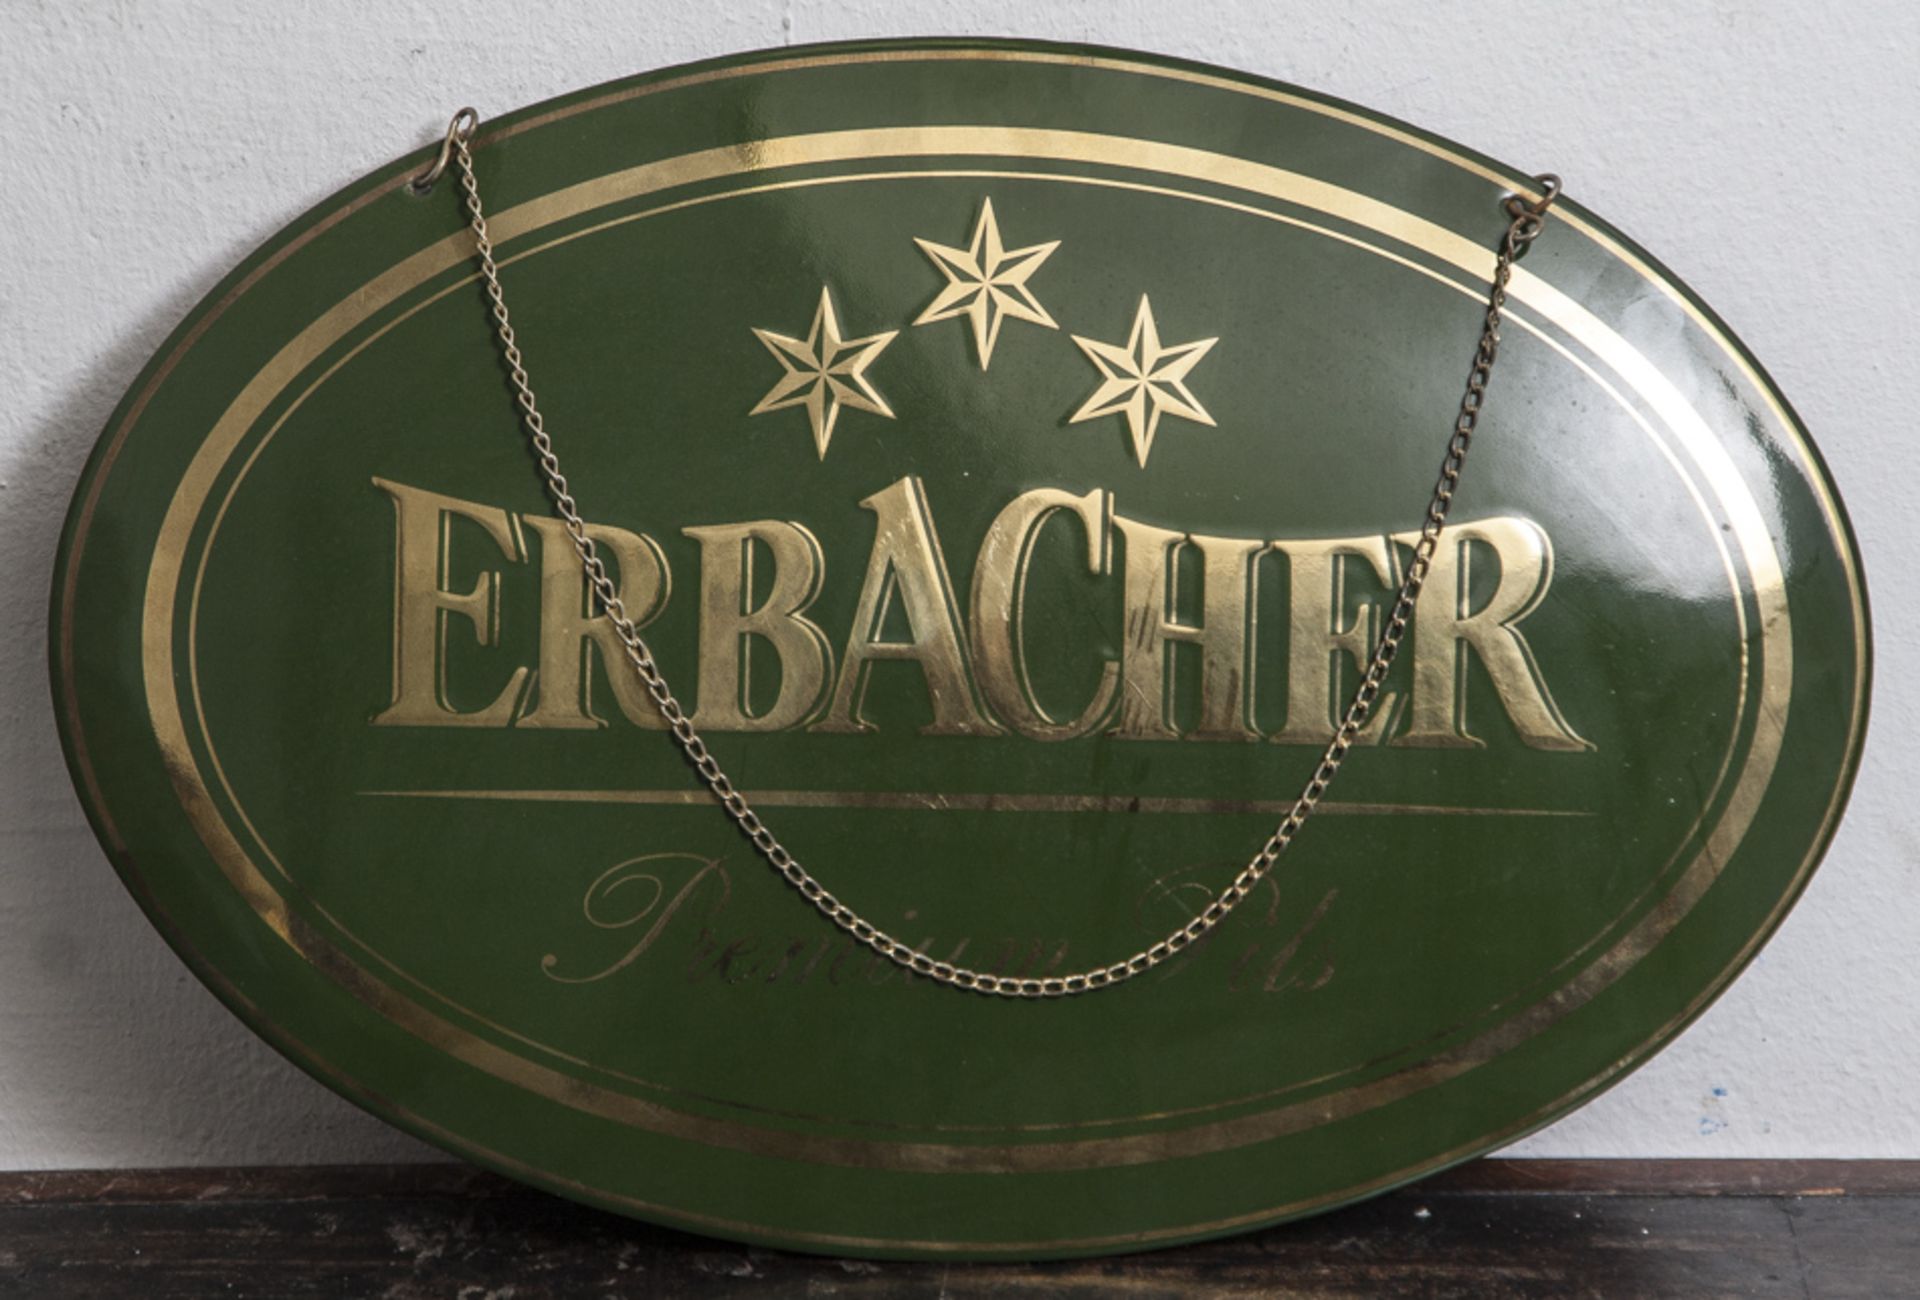 Emailschild, "Erbacher - Premium Pils", goldene Schrift auf grünem Grund, oval. Ca. 30 x45 cm.